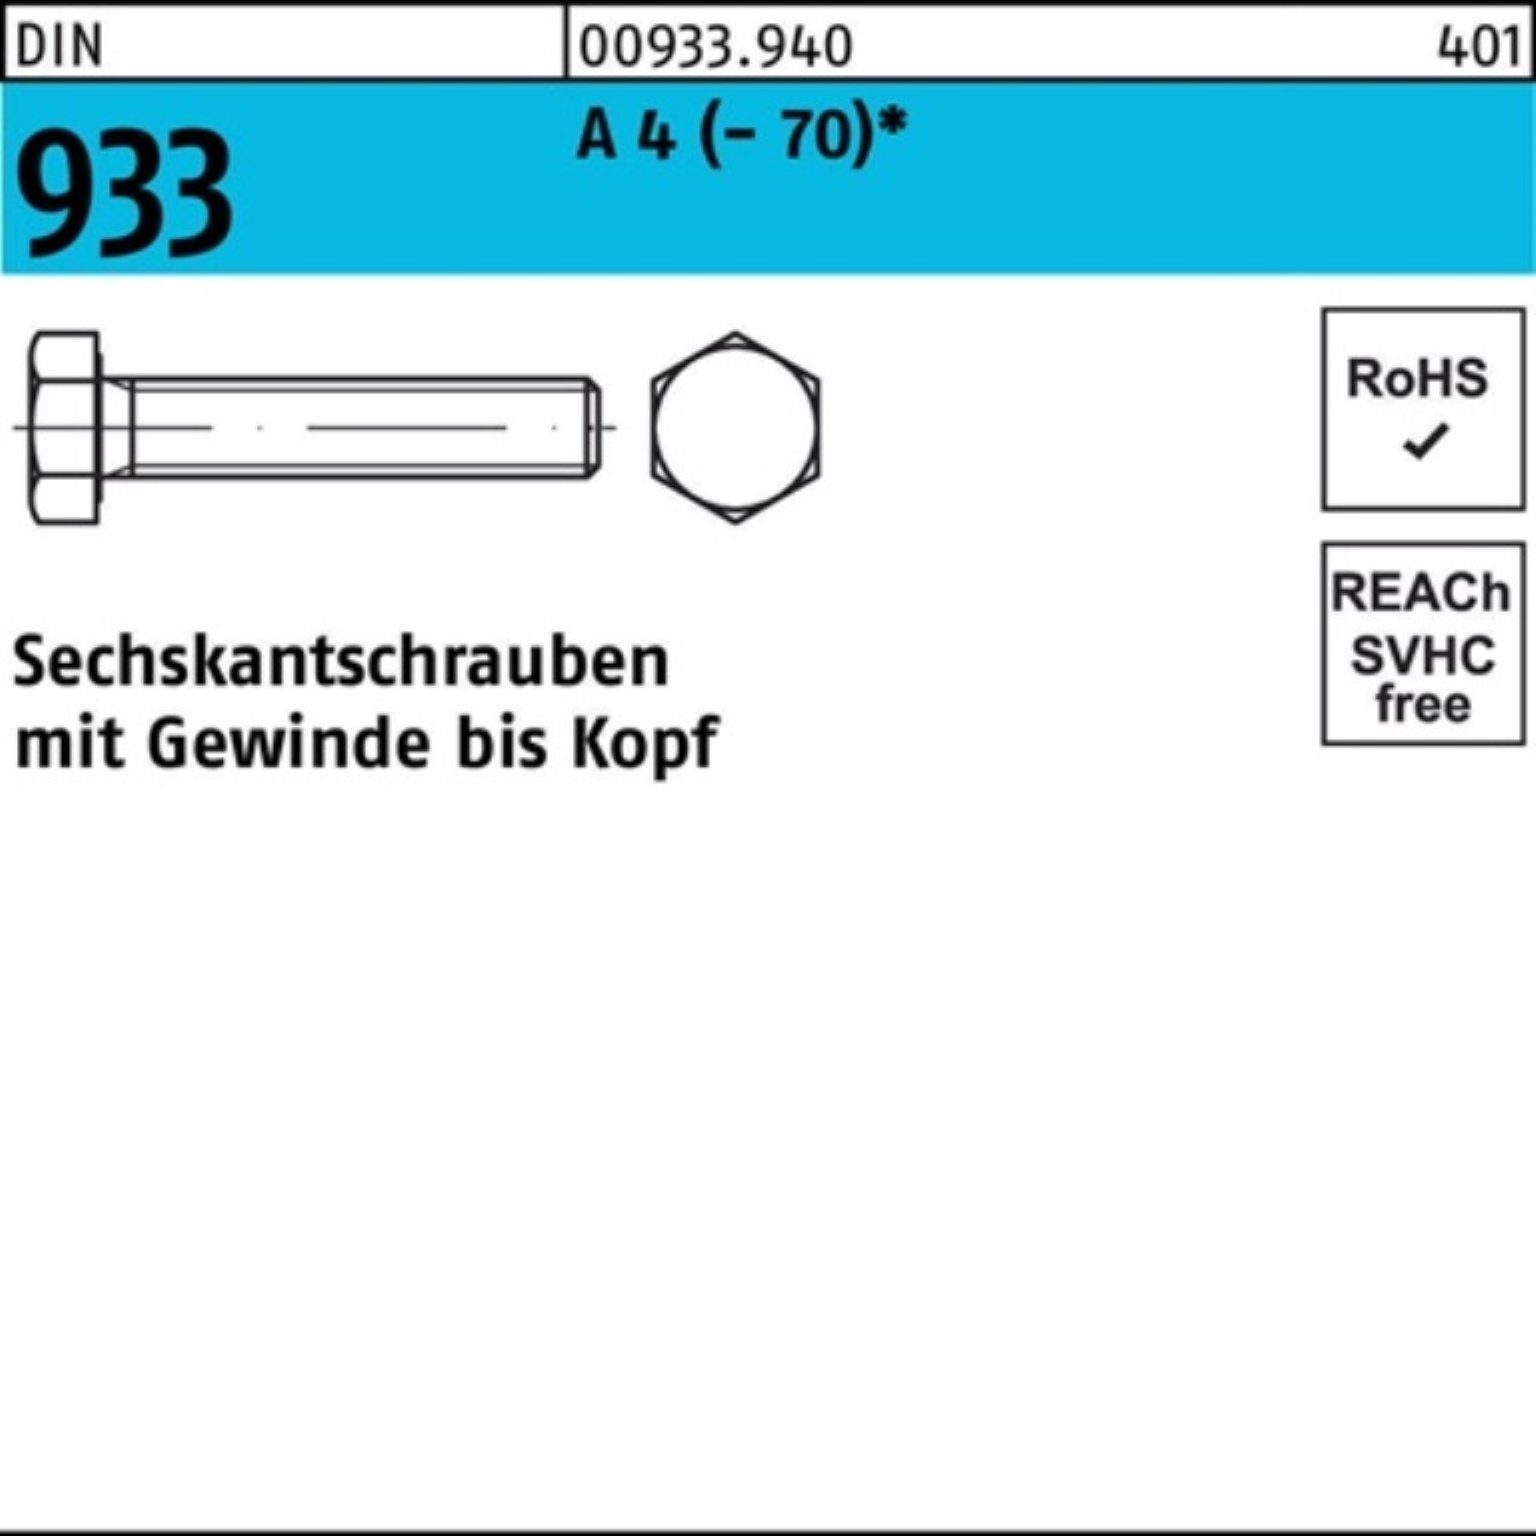 Pack Sechskantschraube 90 DI Reyher 4 A 50 DIN M6x Sechskantschraube Stück 933 VG 100er (70)